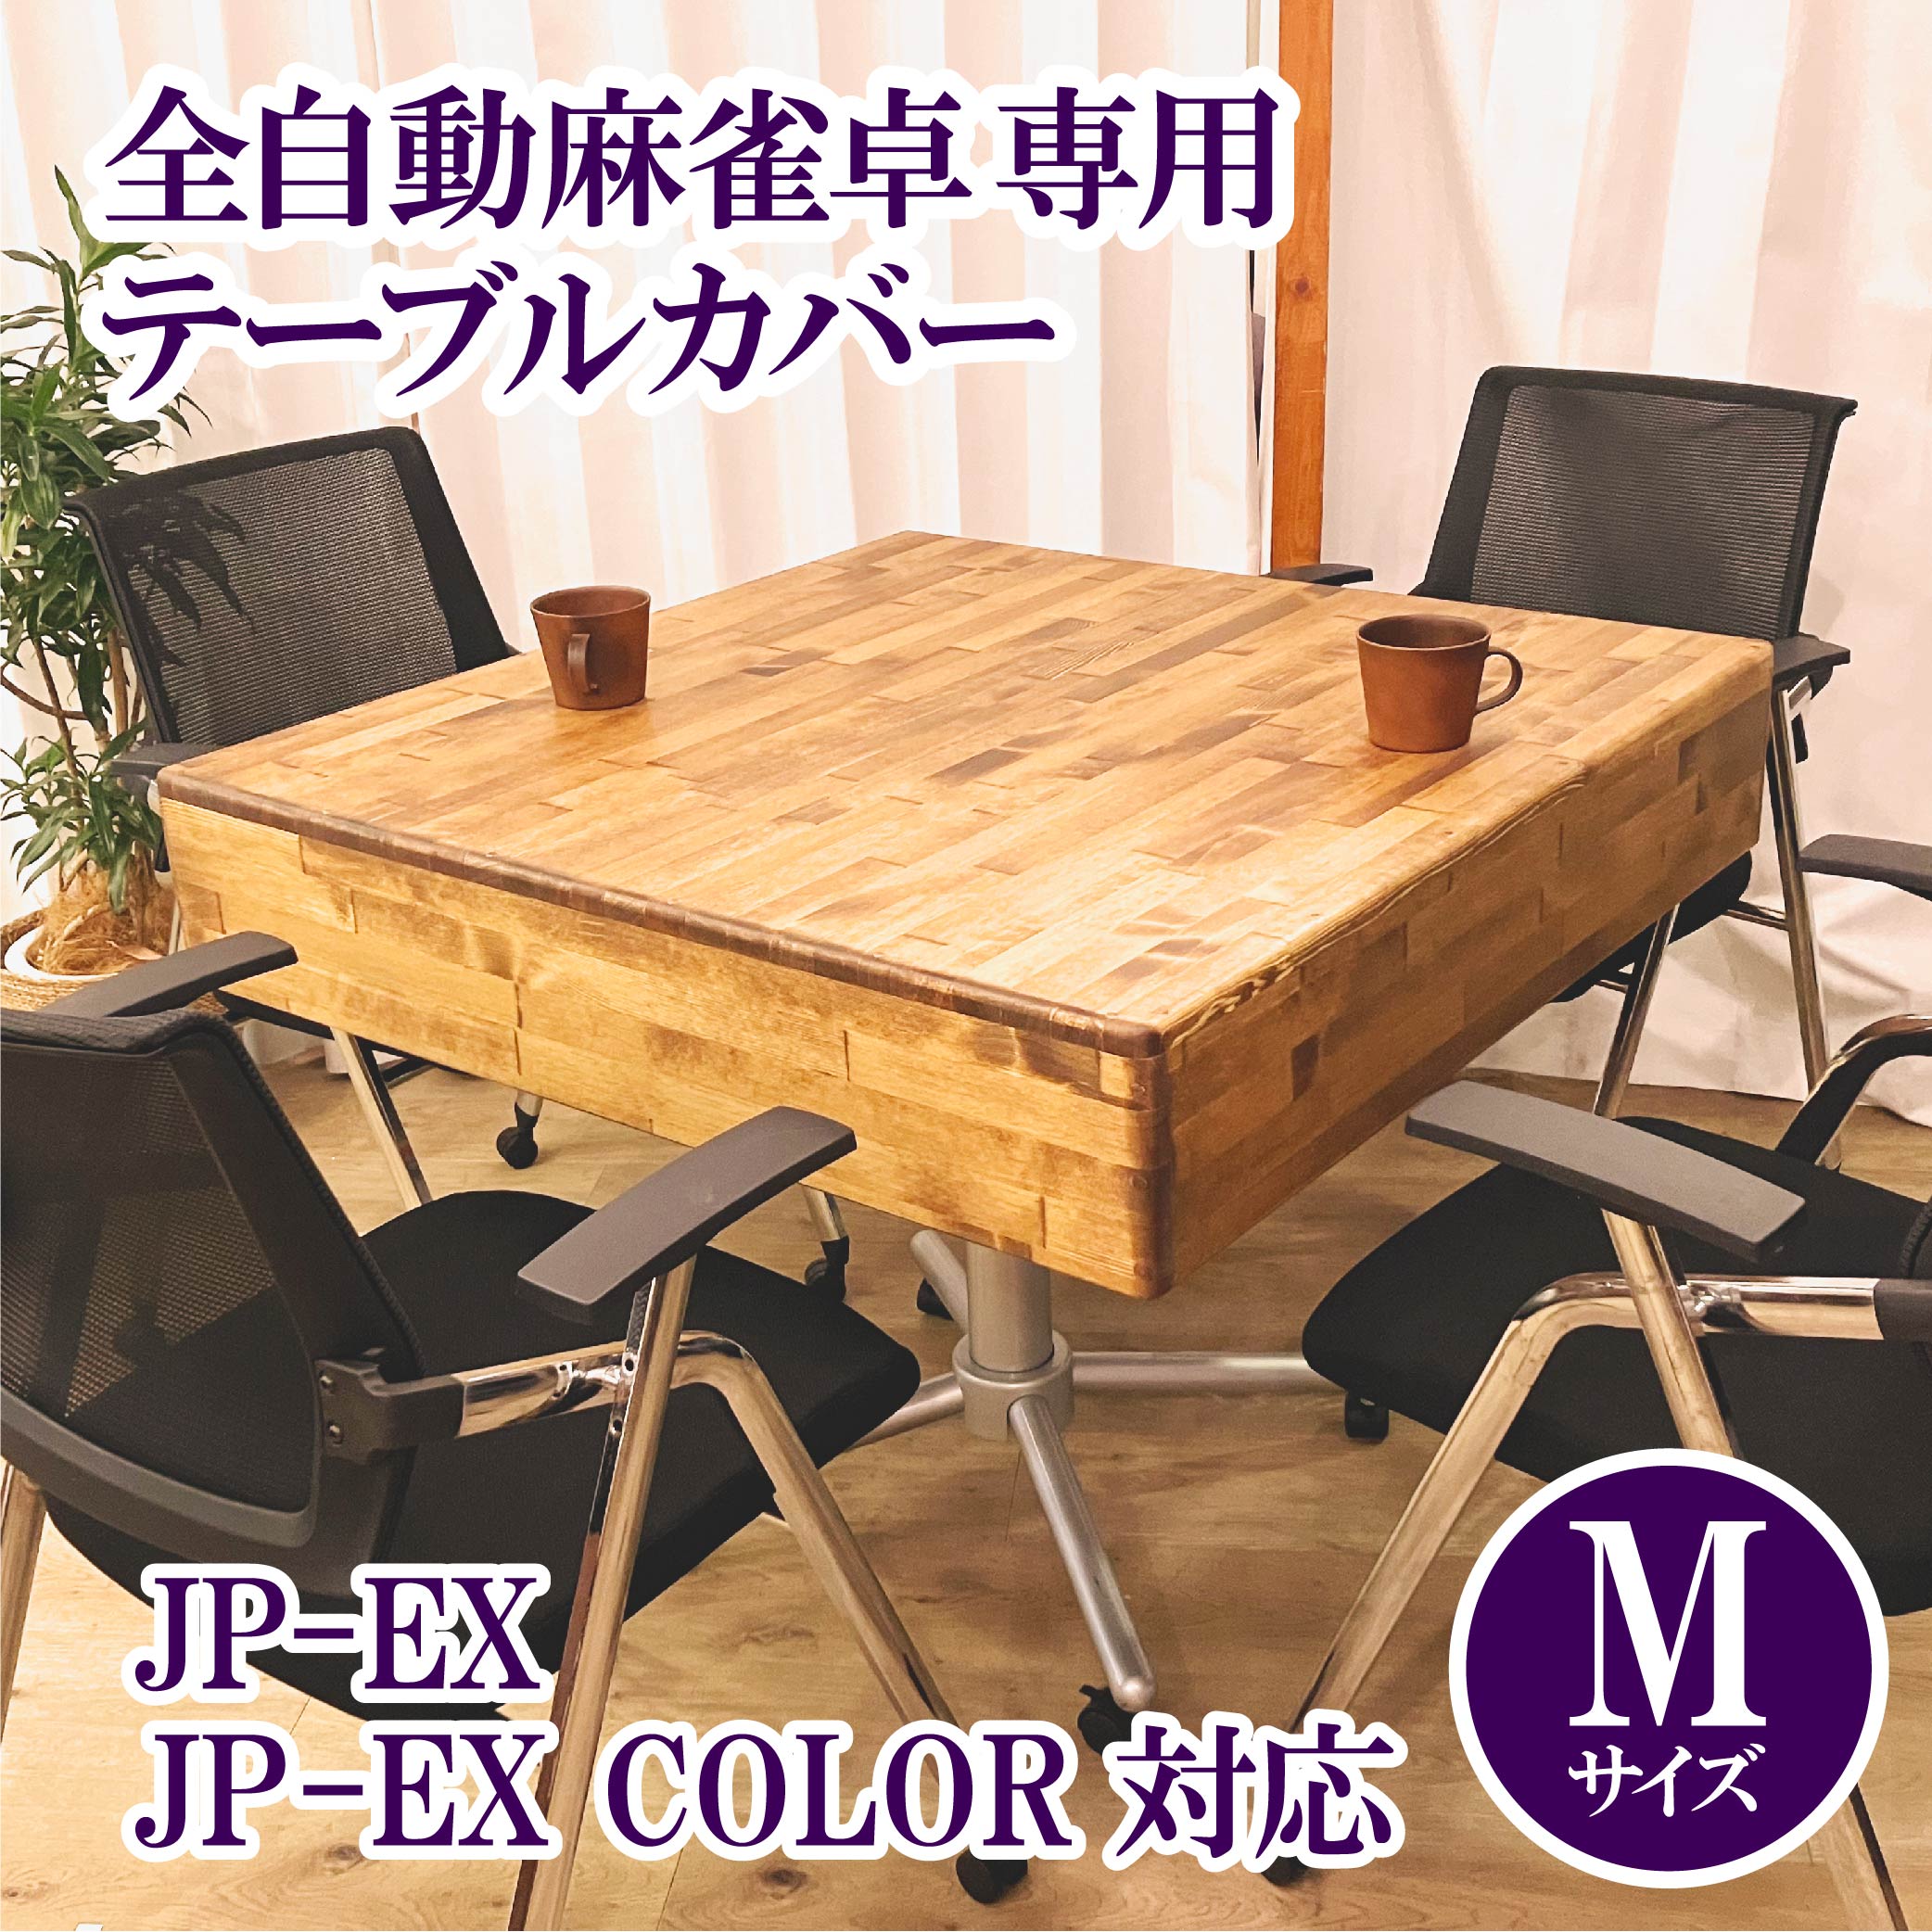 【1月中旬ごろ出荷予定】【JP-EX,COLOR用】木製テーブルカバー 全自動麻雀卓用-AMOS公式ショップ